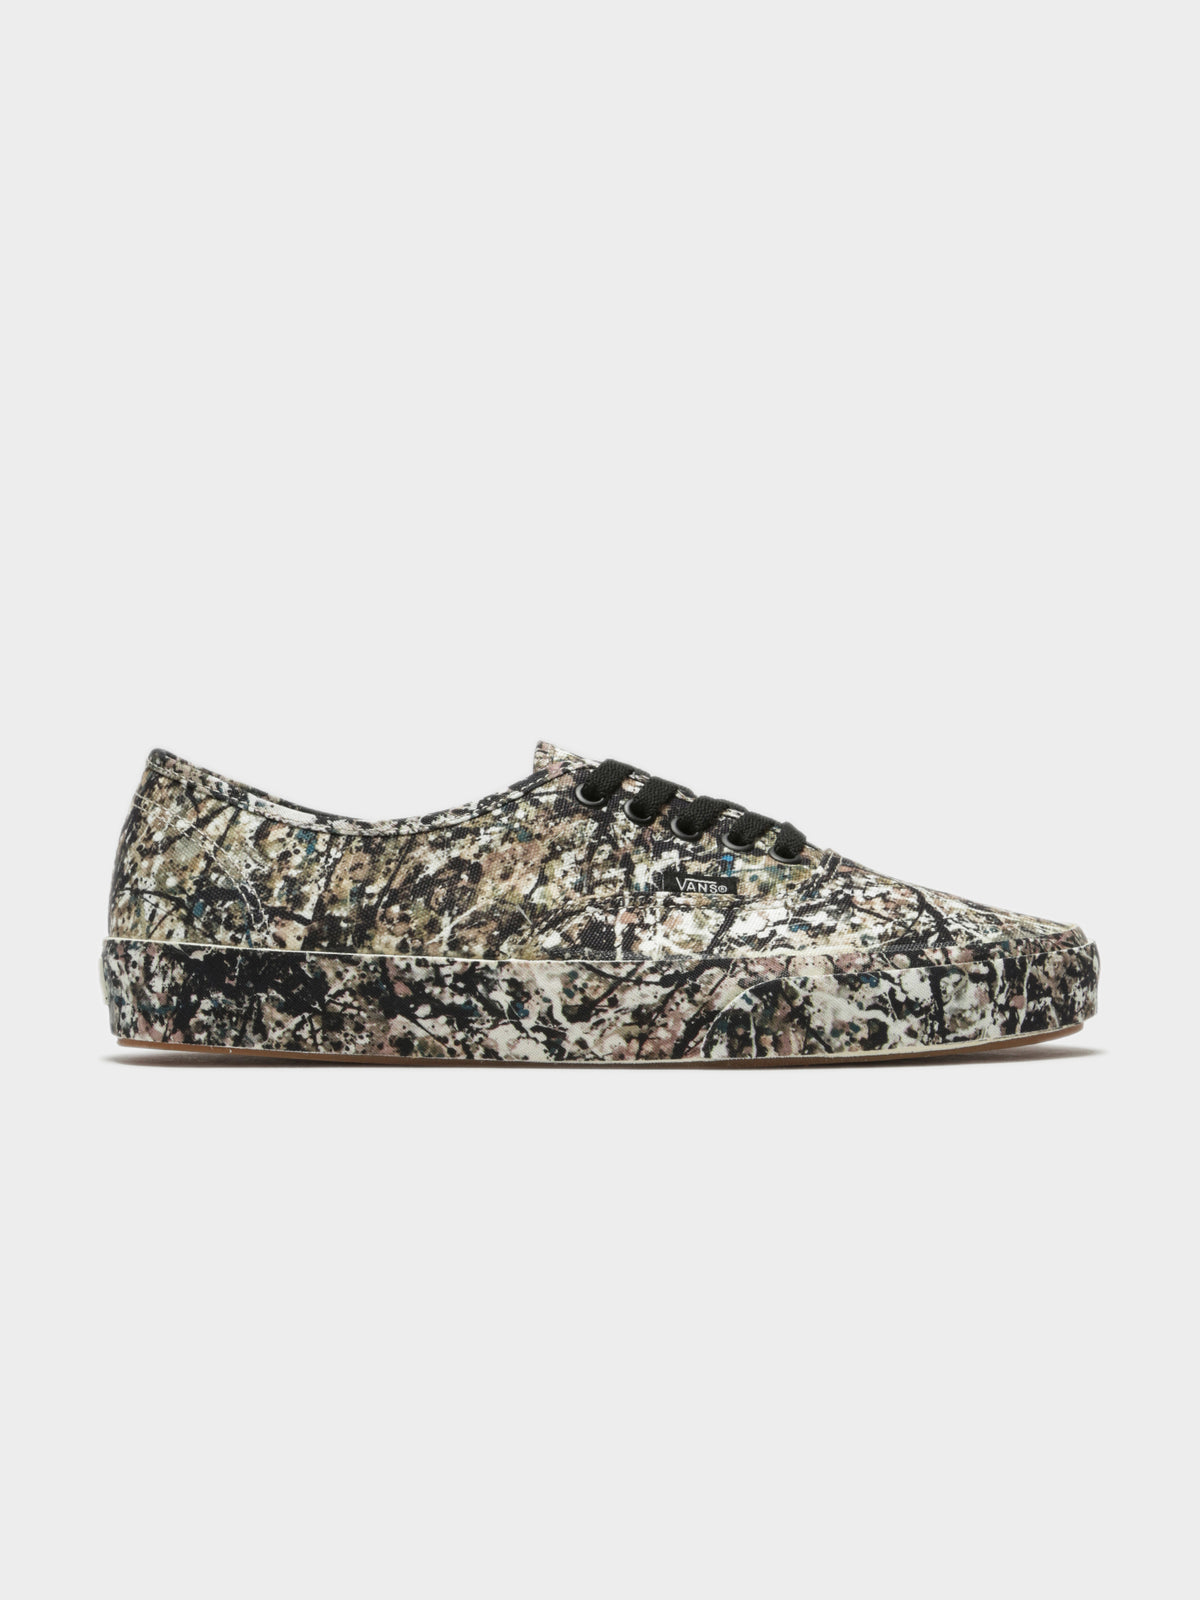 Unisex Old Skool Twist Sneakers in MoMA Jackson Pollock Print